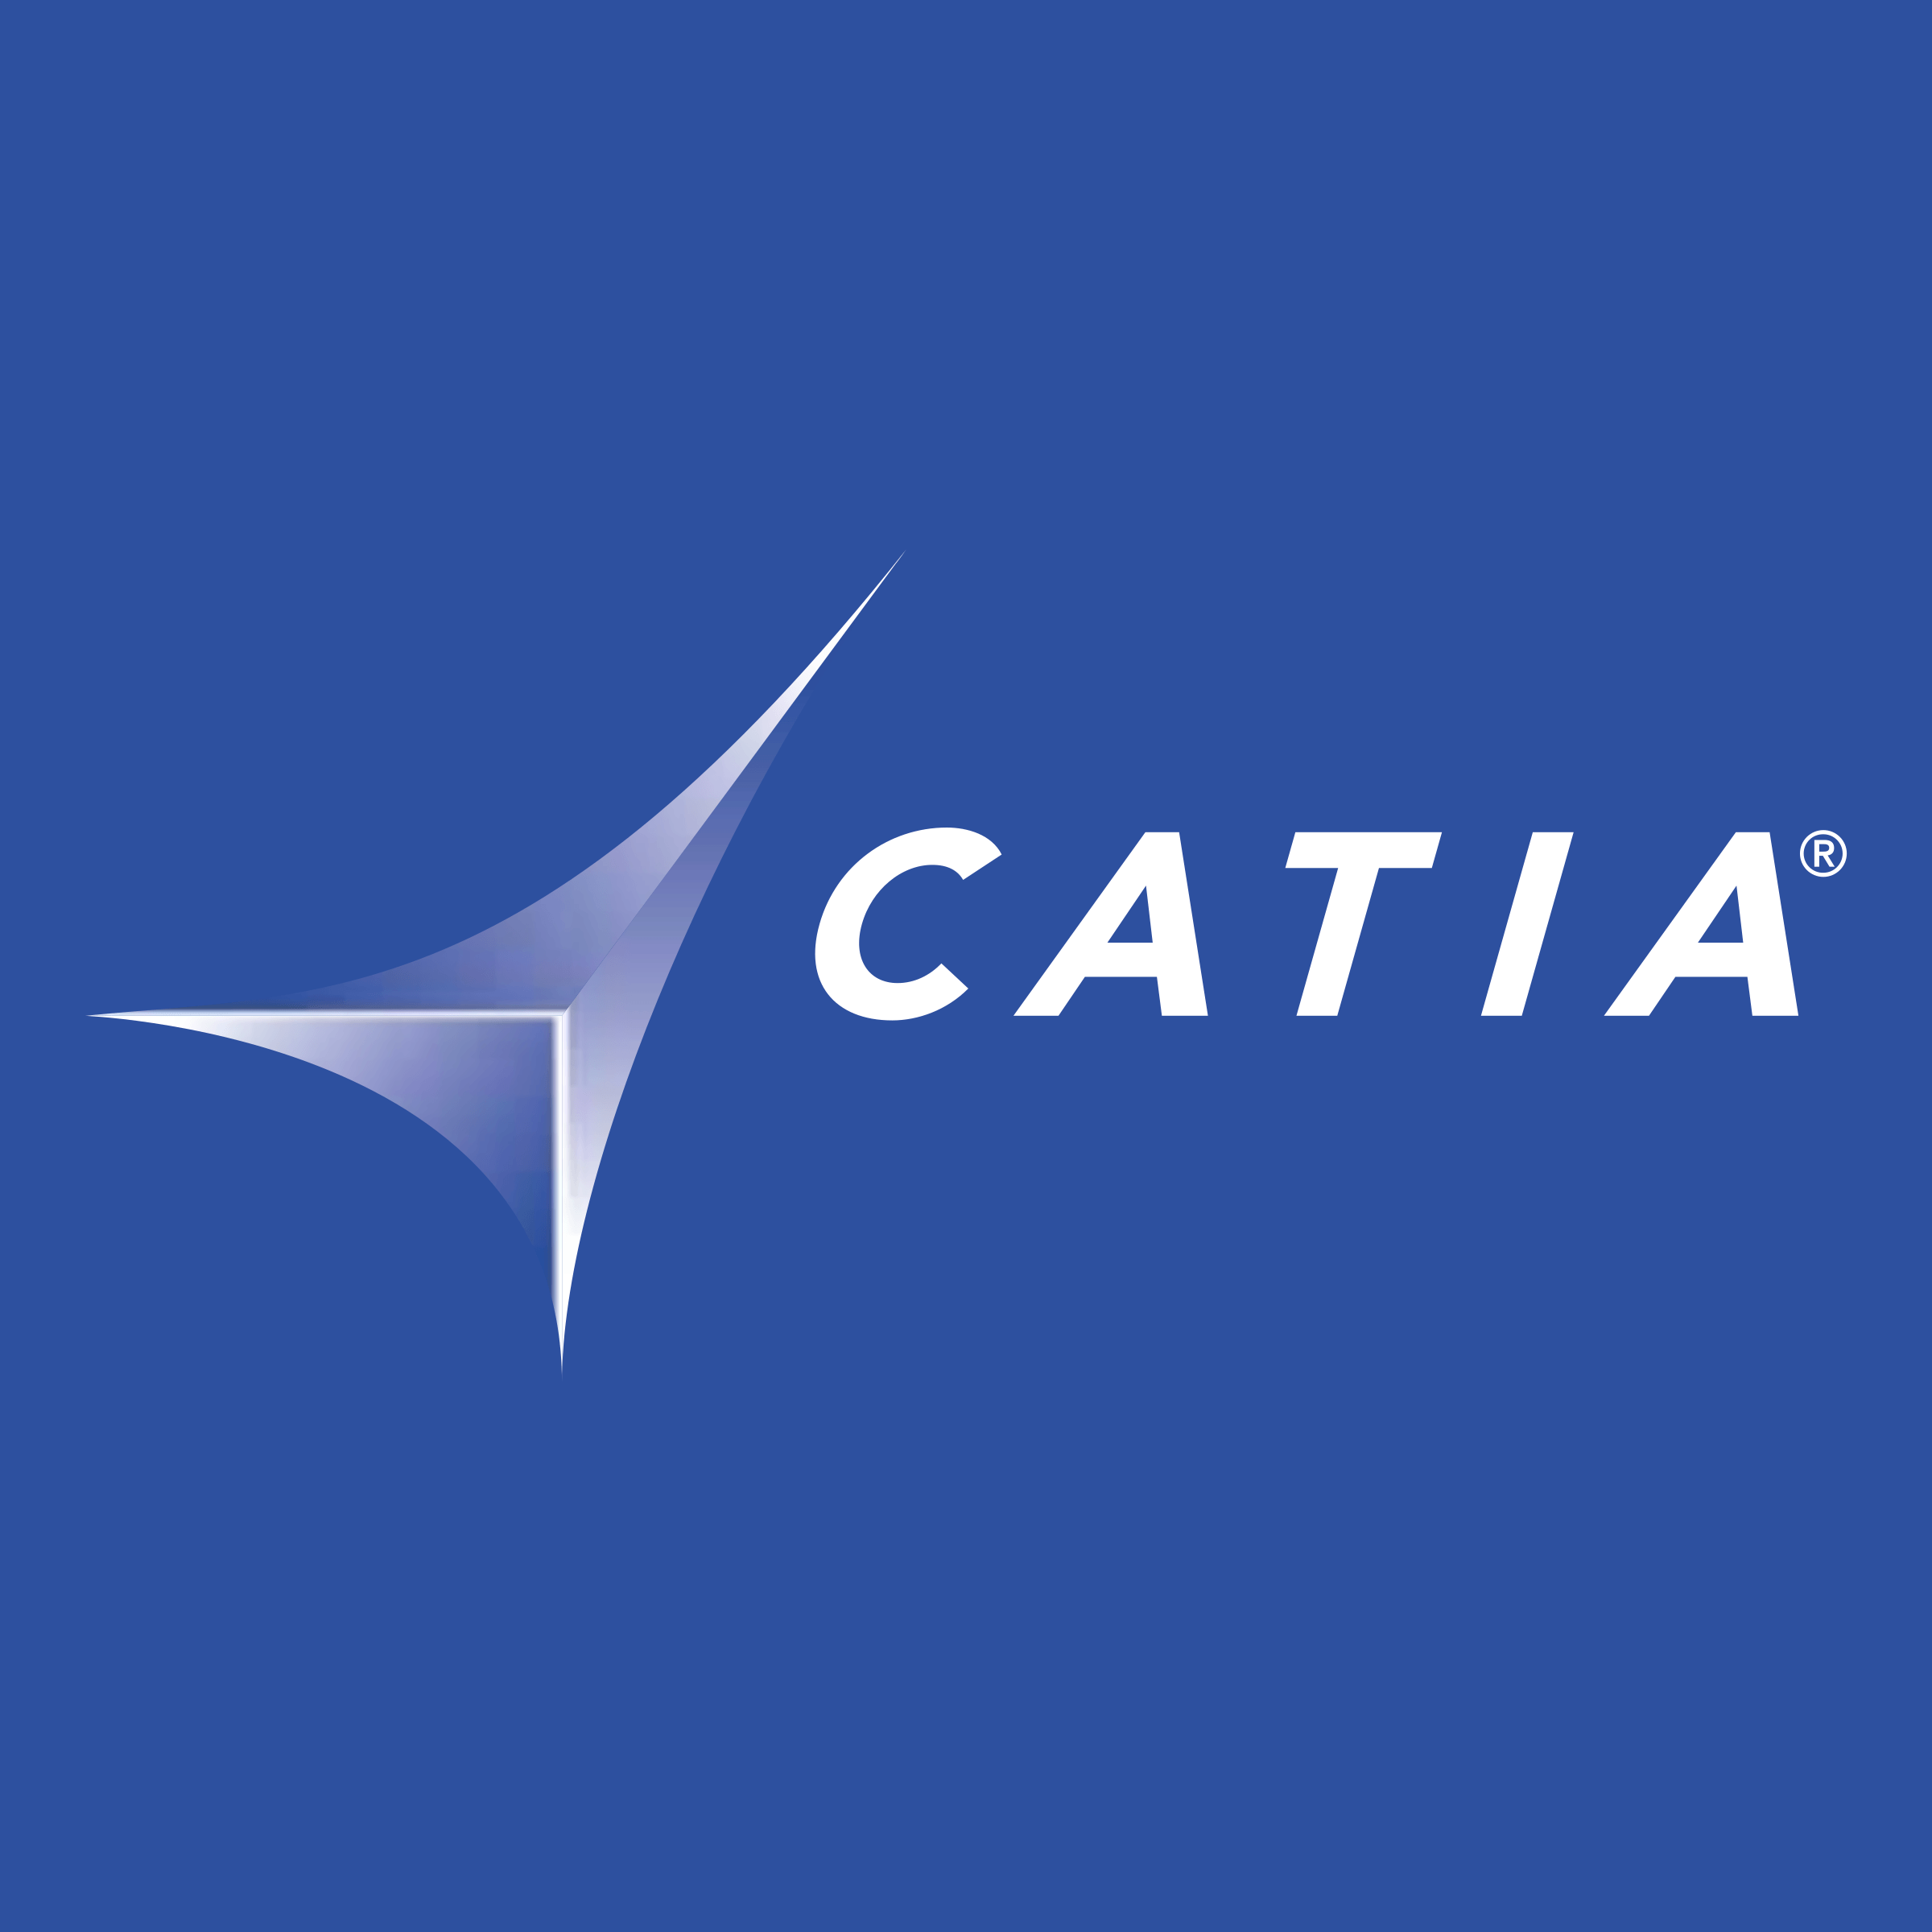 Catia Logo - Catia Solutions Logo PNG Transparent & SVG Vector